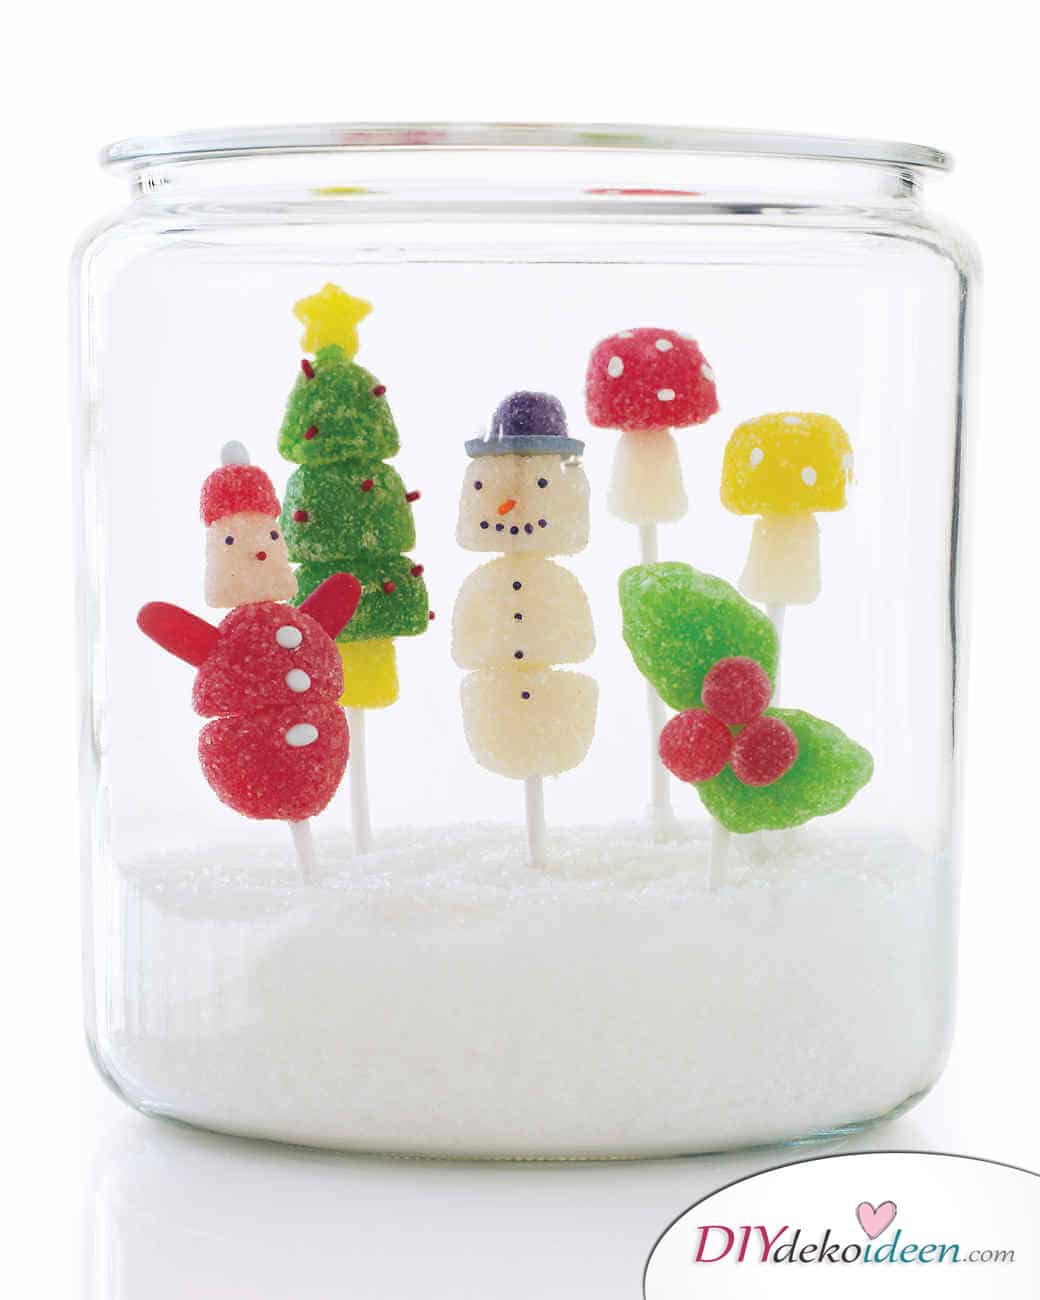 Weihnachtsbasteln mit Kindern - 15 Ideen - basteln mit Kindern - Schneekugel basteln - Weihnachten Geschenkidee